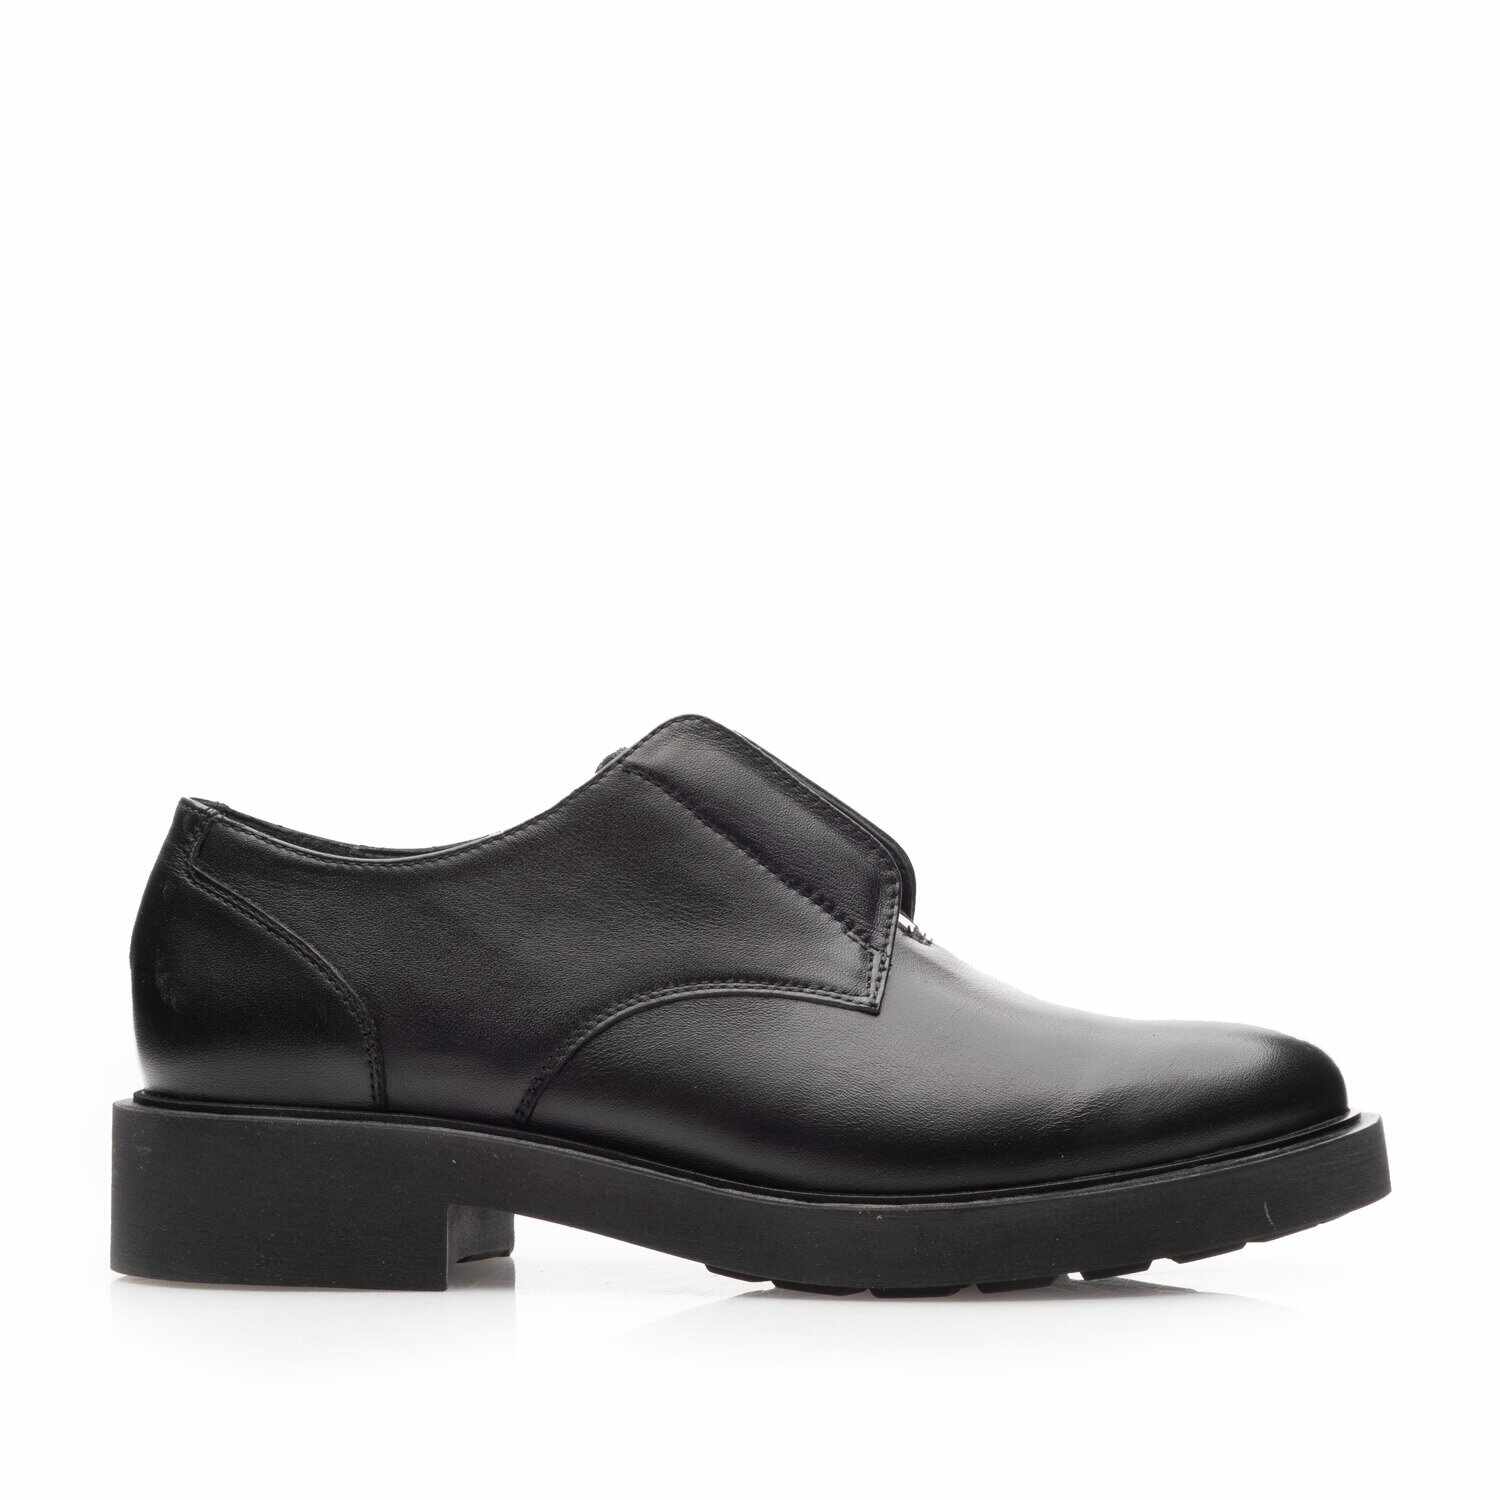 Pantofi casual damă din piele naturală, Leofex - 393 Negru box